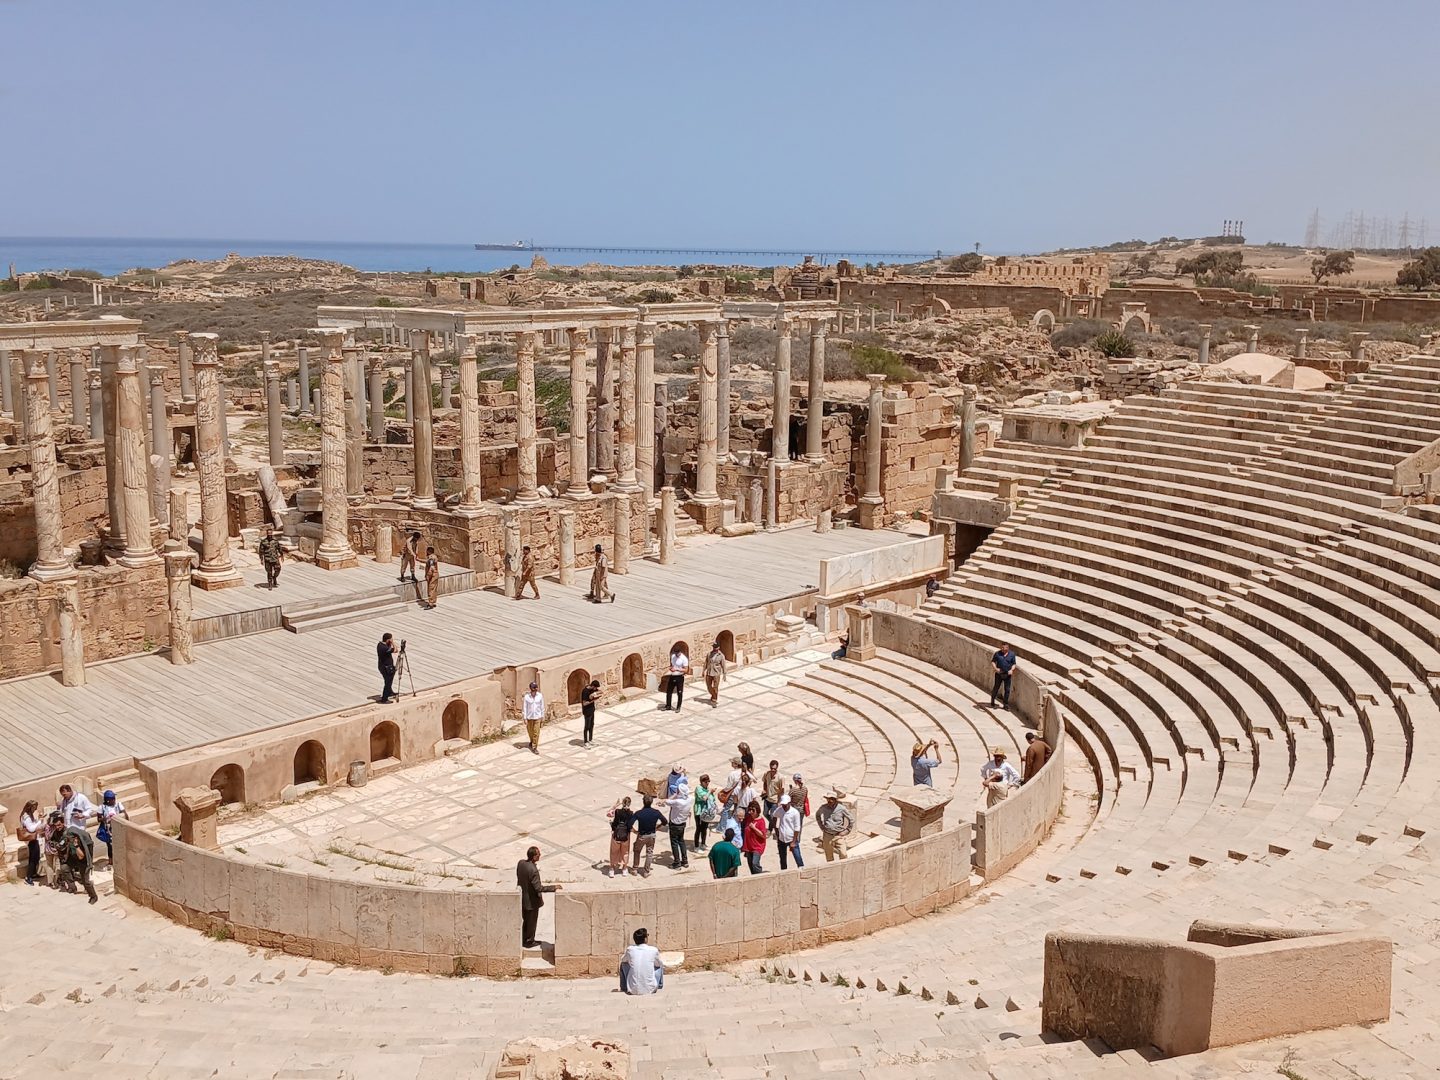 immagine dall'alto di un teatro romano parzialmente ristrutturato in libia